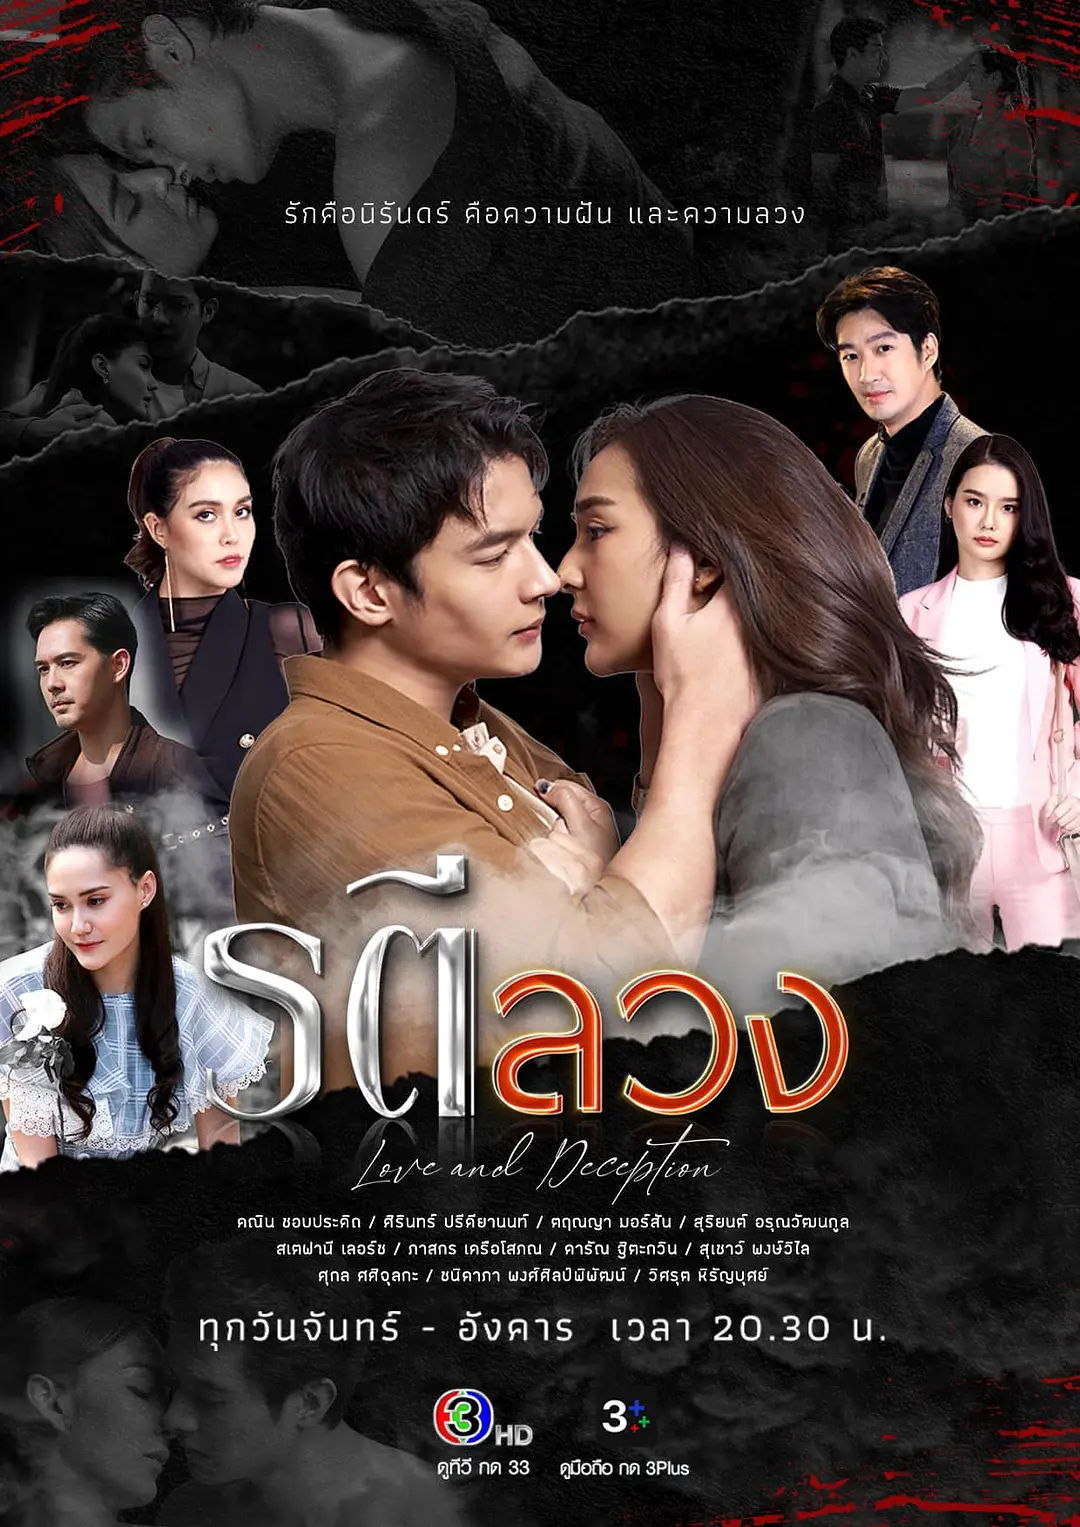 免费在线观看完整版泰国剧《情殇恋痕》